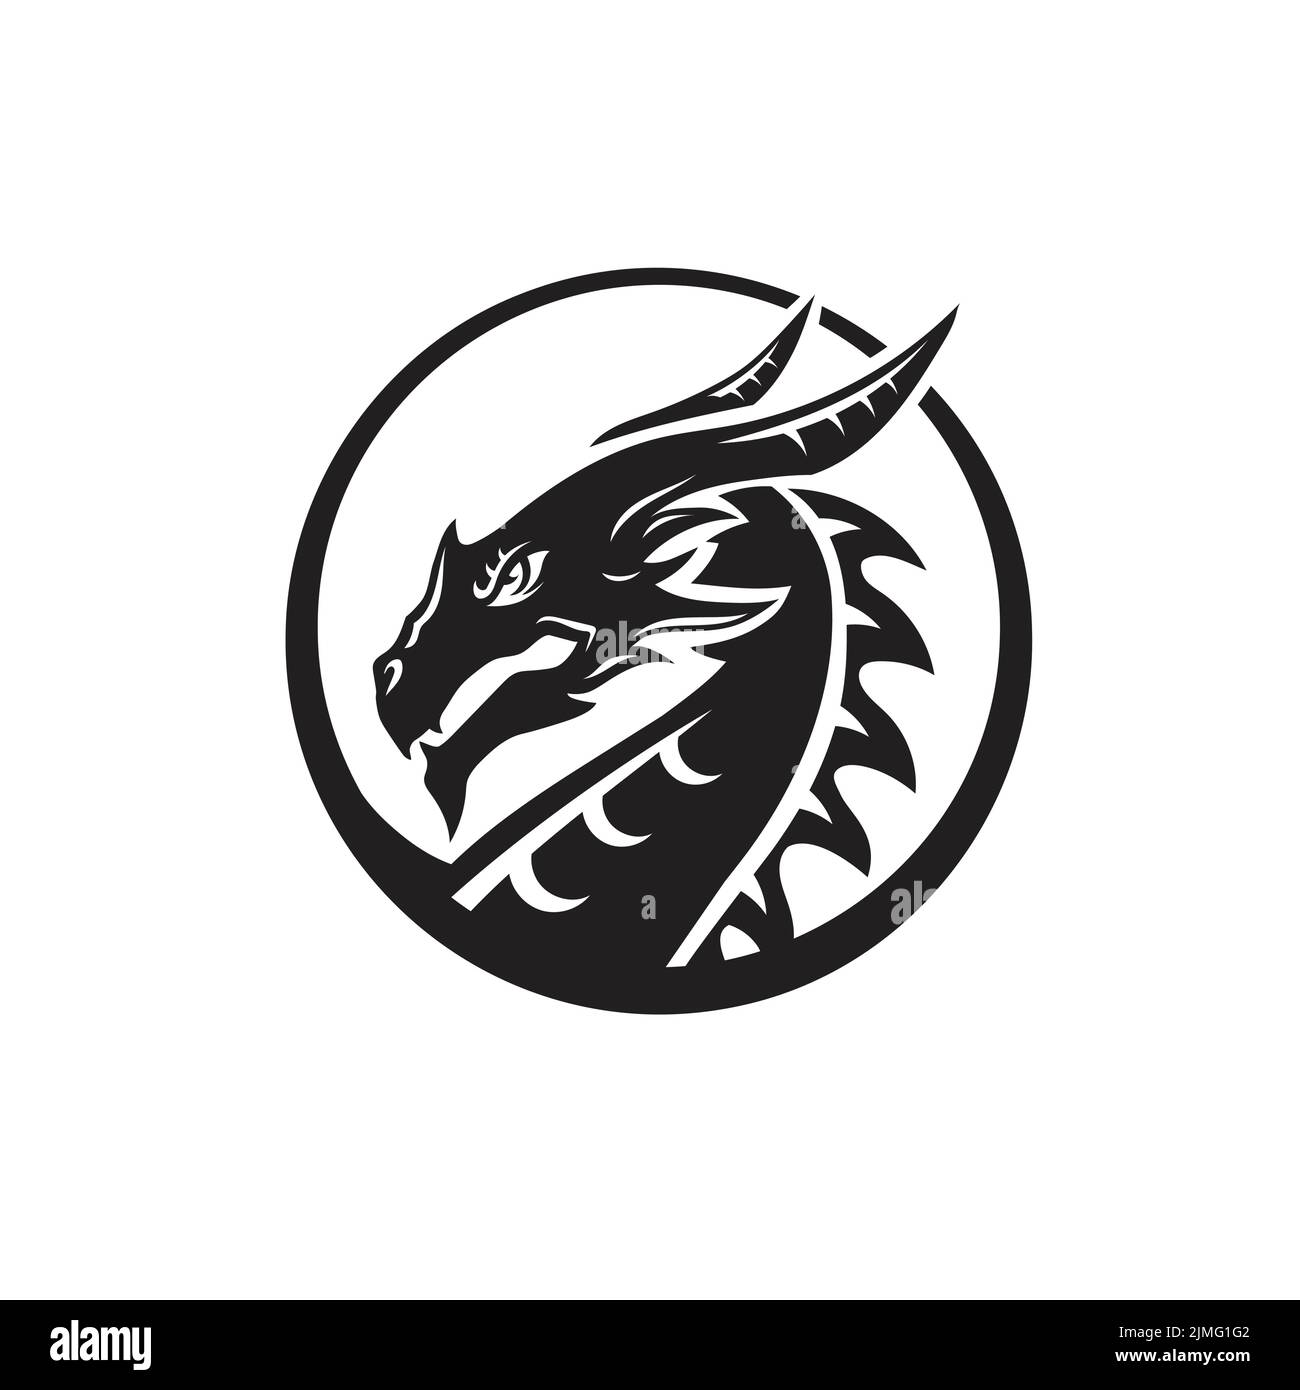 La silhouette della testa del drago, dipinta di nero con varie linee, il logo della figura del drago fata Vector Illustrazione Vettoriale